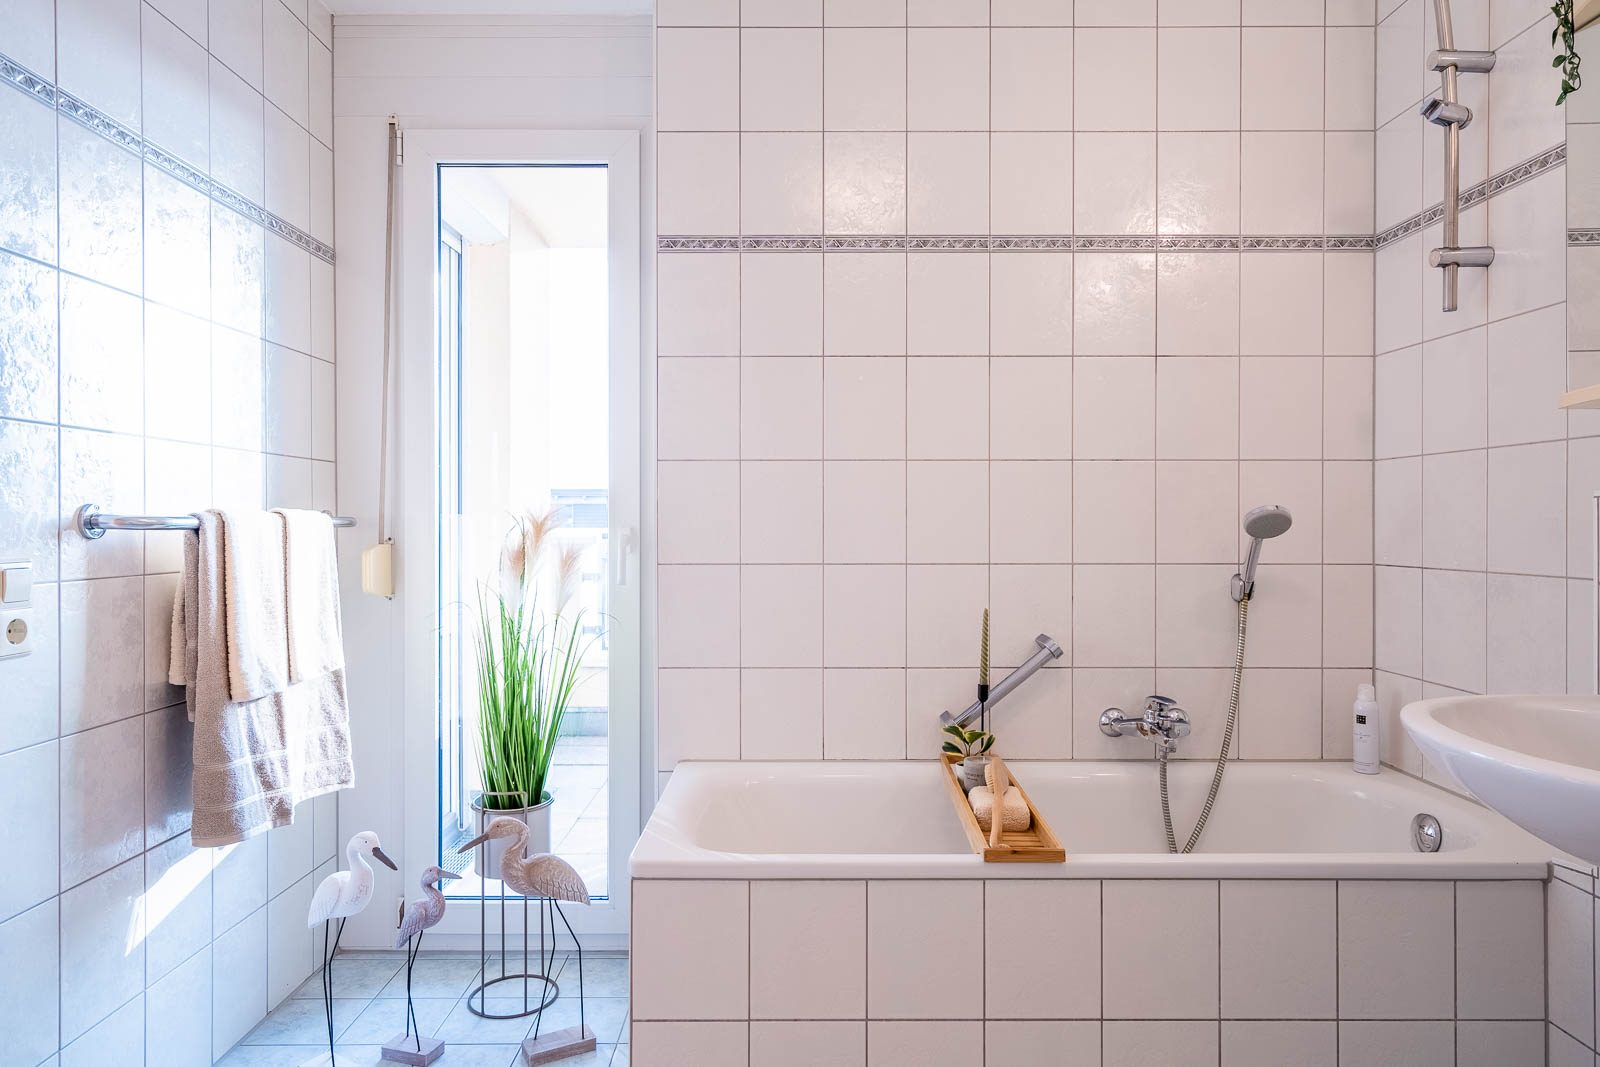 Home Staging im Badezimmer das sind die Tricks KROß IMMOBILIEN Immobilienmakler in Freiburg und Region